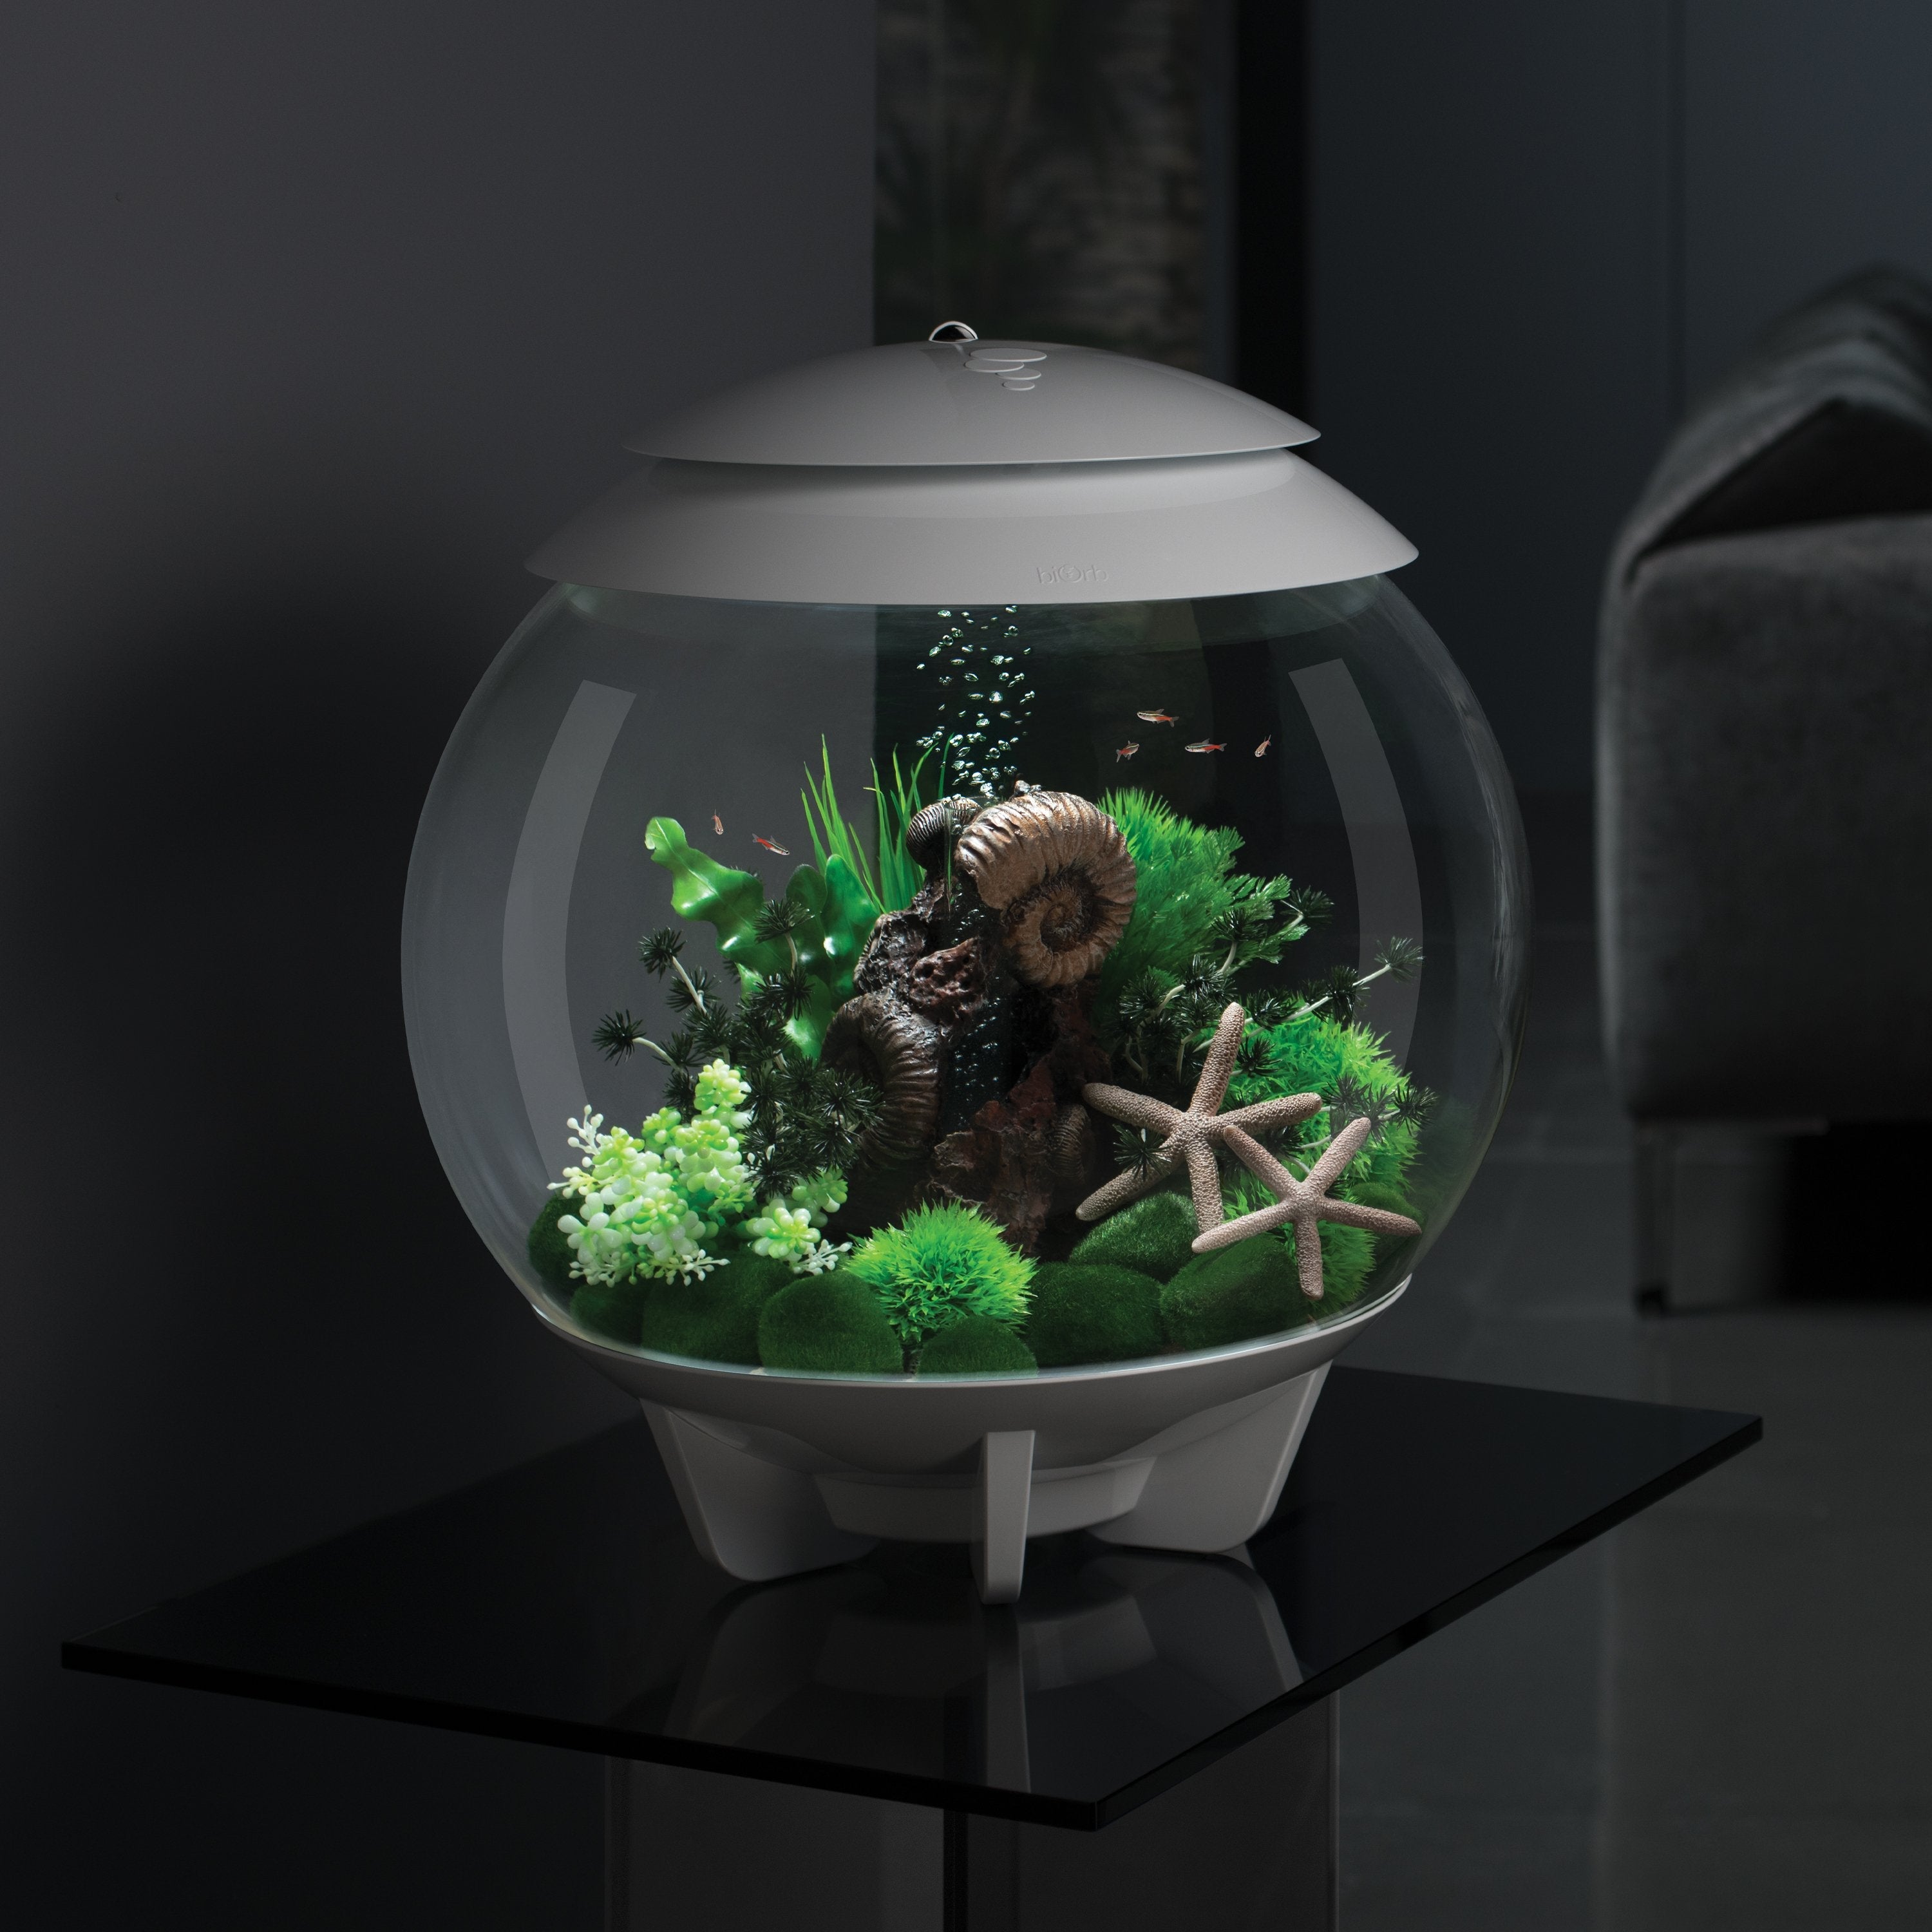 HALO 30 Aquarium with MCR Light - 8 gallon in Use